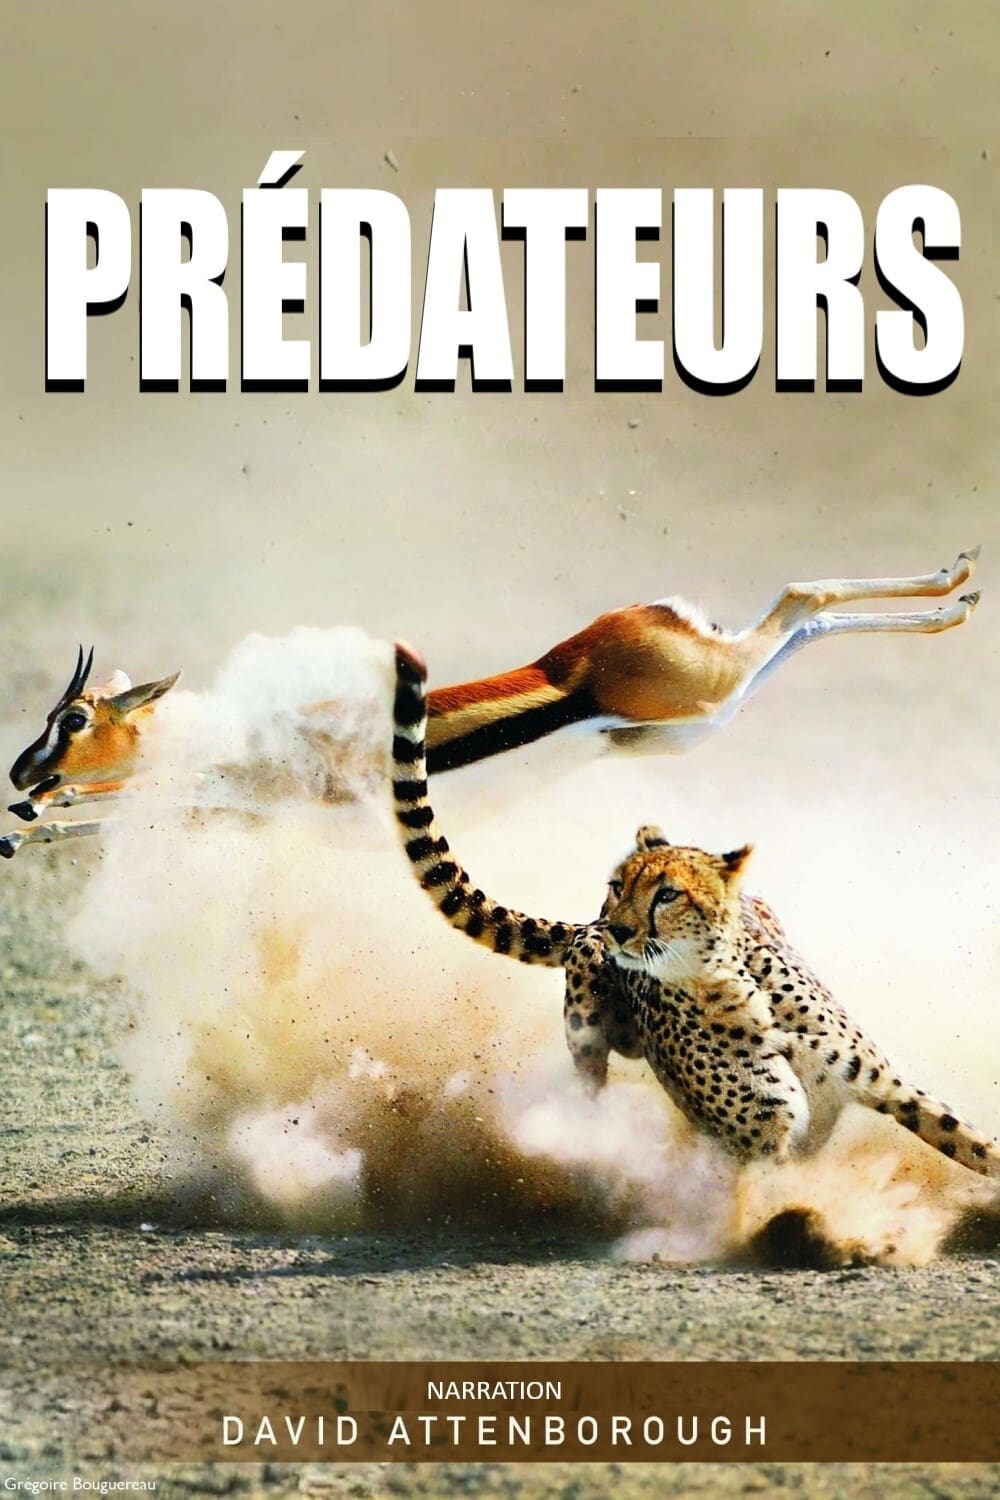 Affiche de la série Prédateurs poster